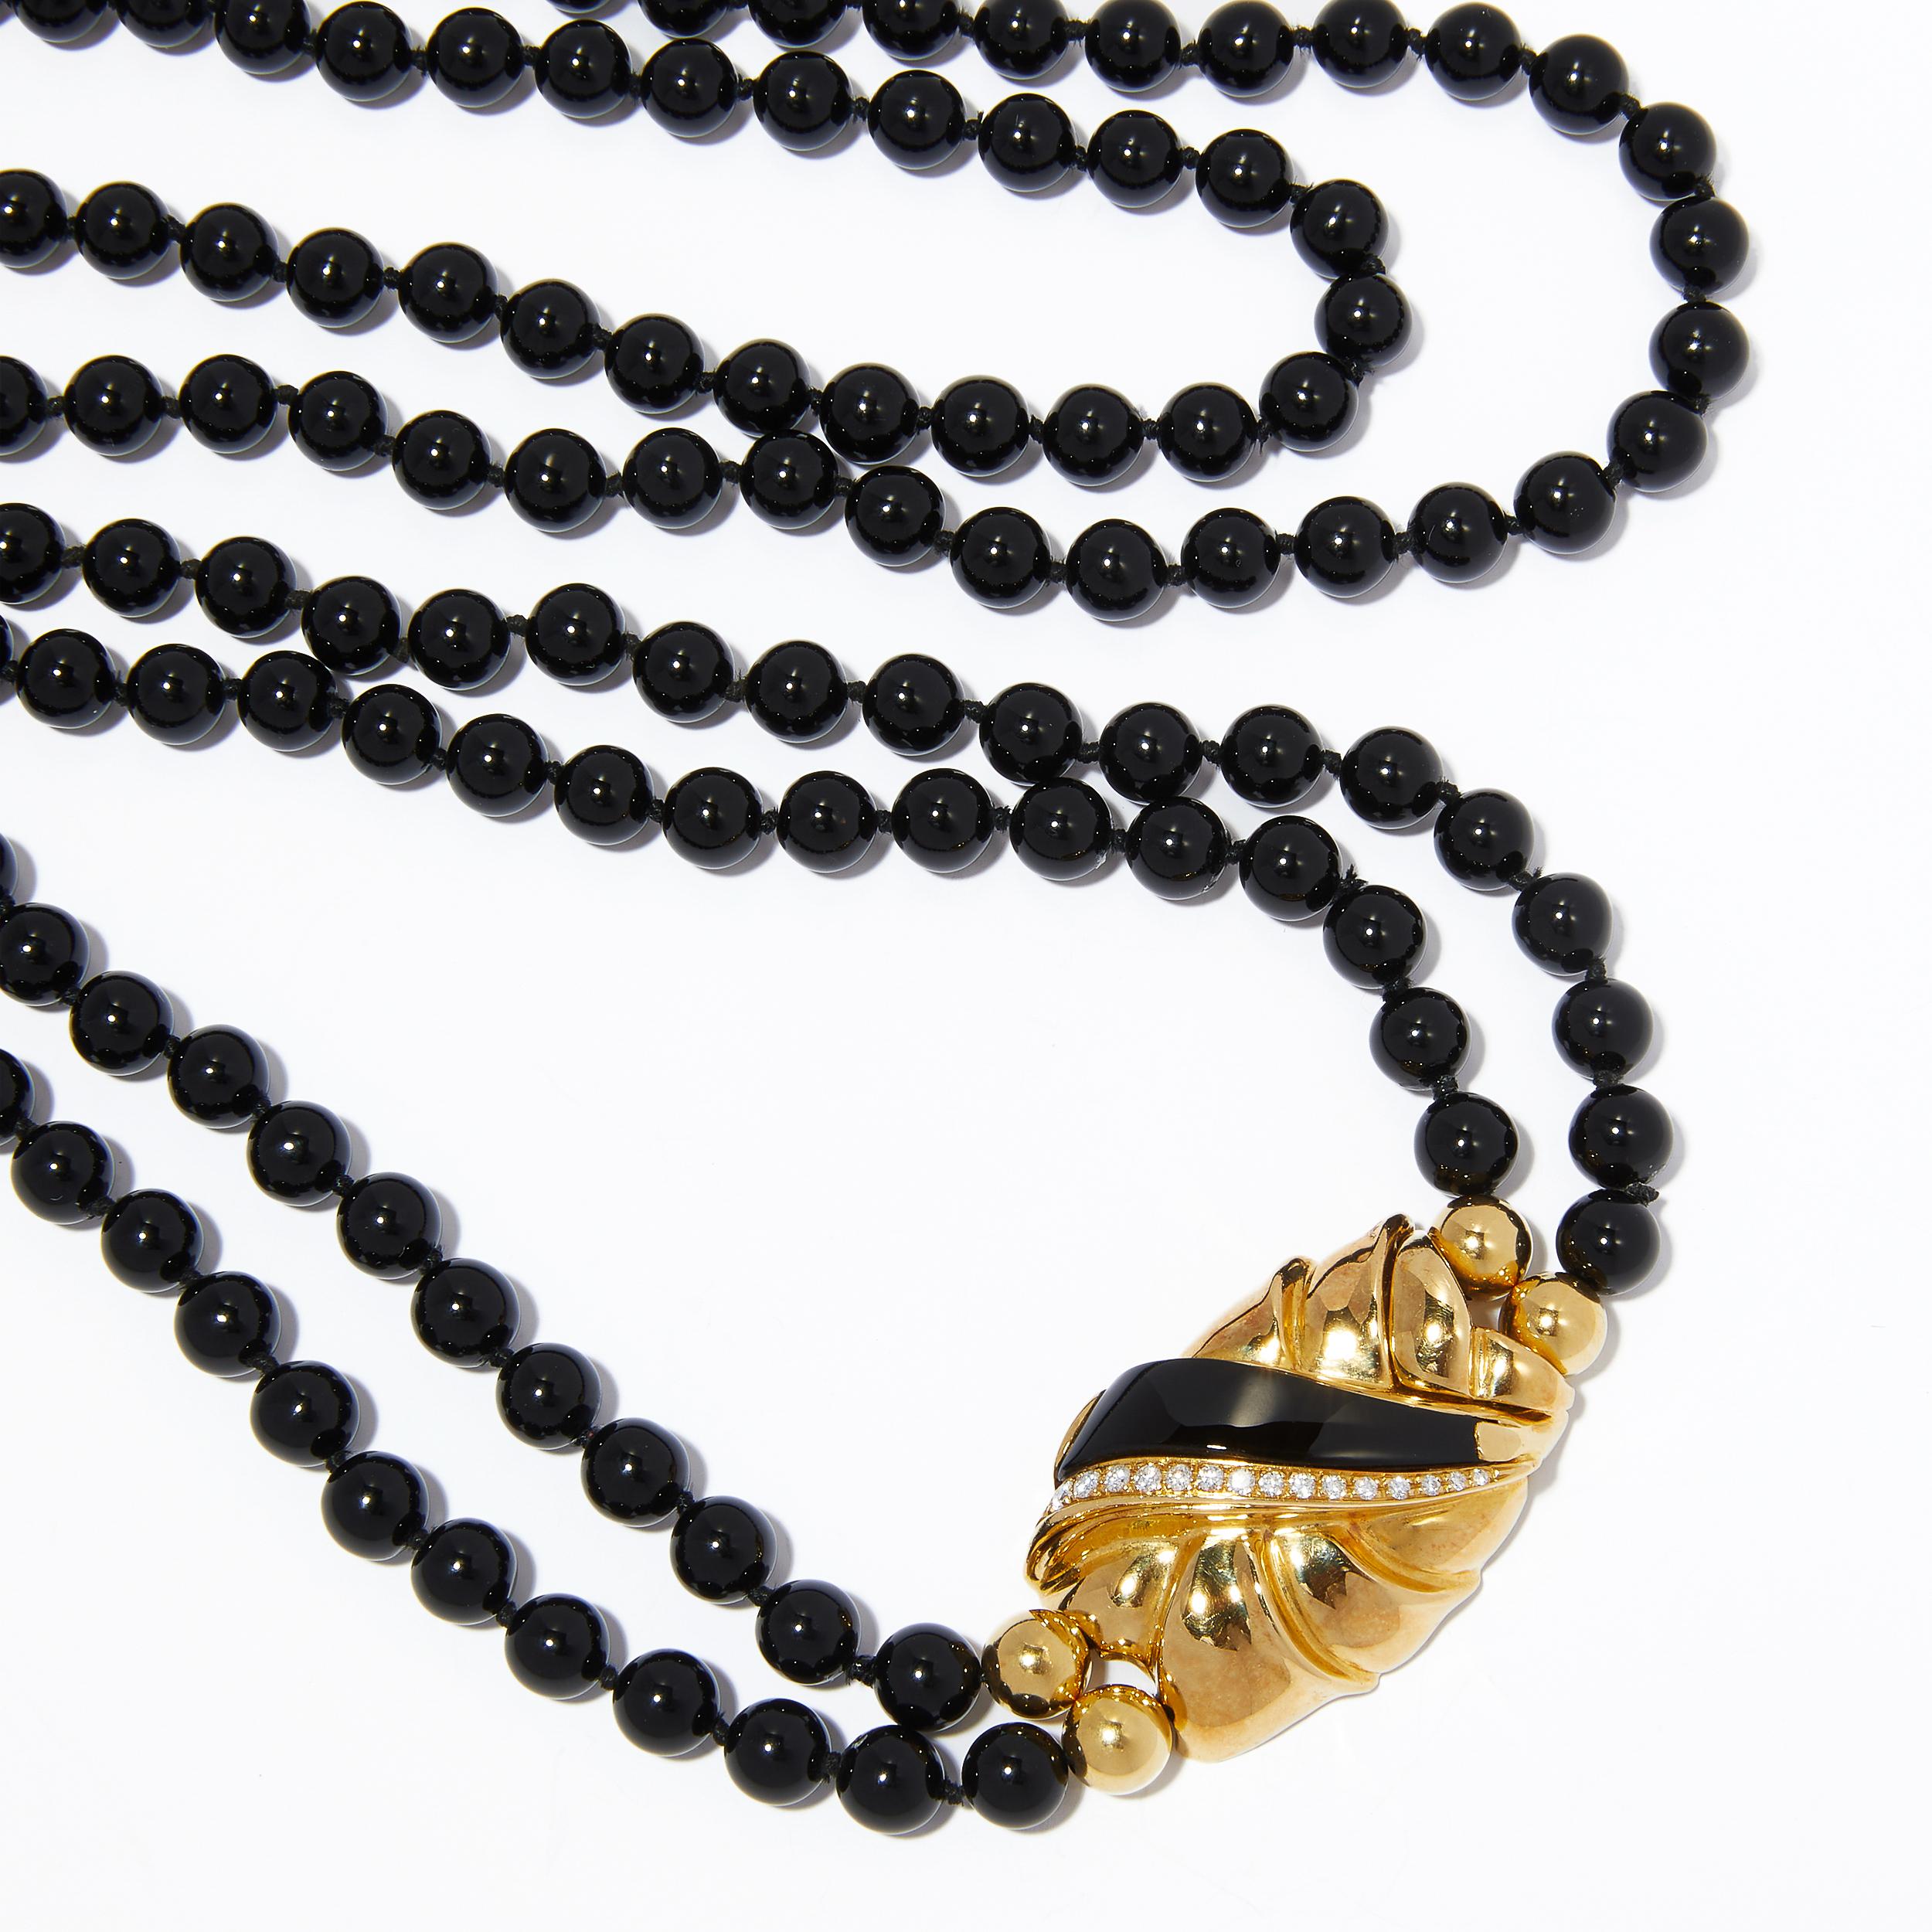 Laissez les brins apparemment infinis de perles d'onyx de ce collier de perles ajouter un peu de piquant à votre décolleté ! Attirant l'attention et fabuleuse, cette pièce italienne est composée de 197 perles d'onyx noir de forme libre, disposées en